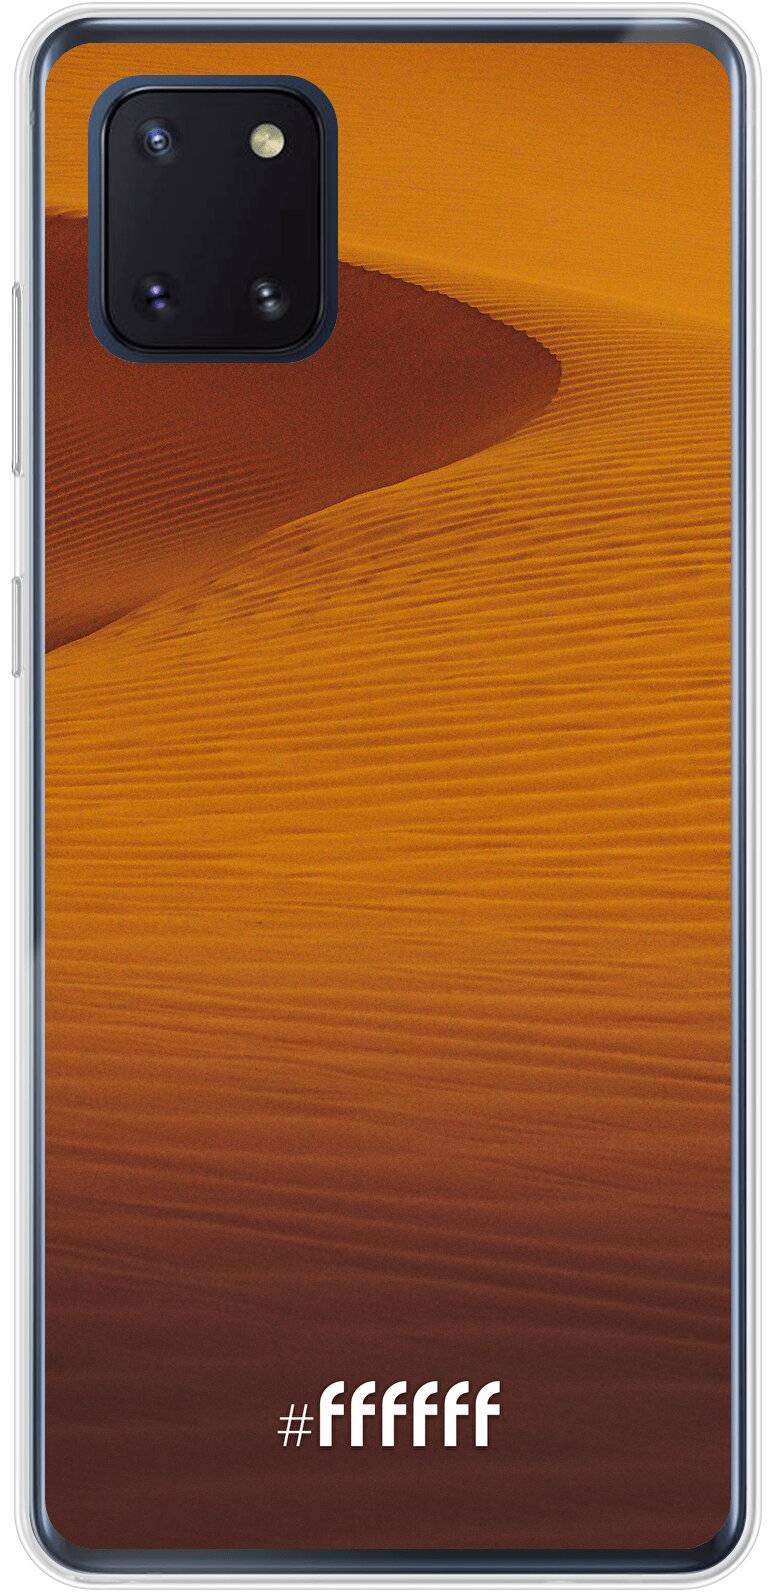 Sand Dunes Galaxy Note 10 Lite